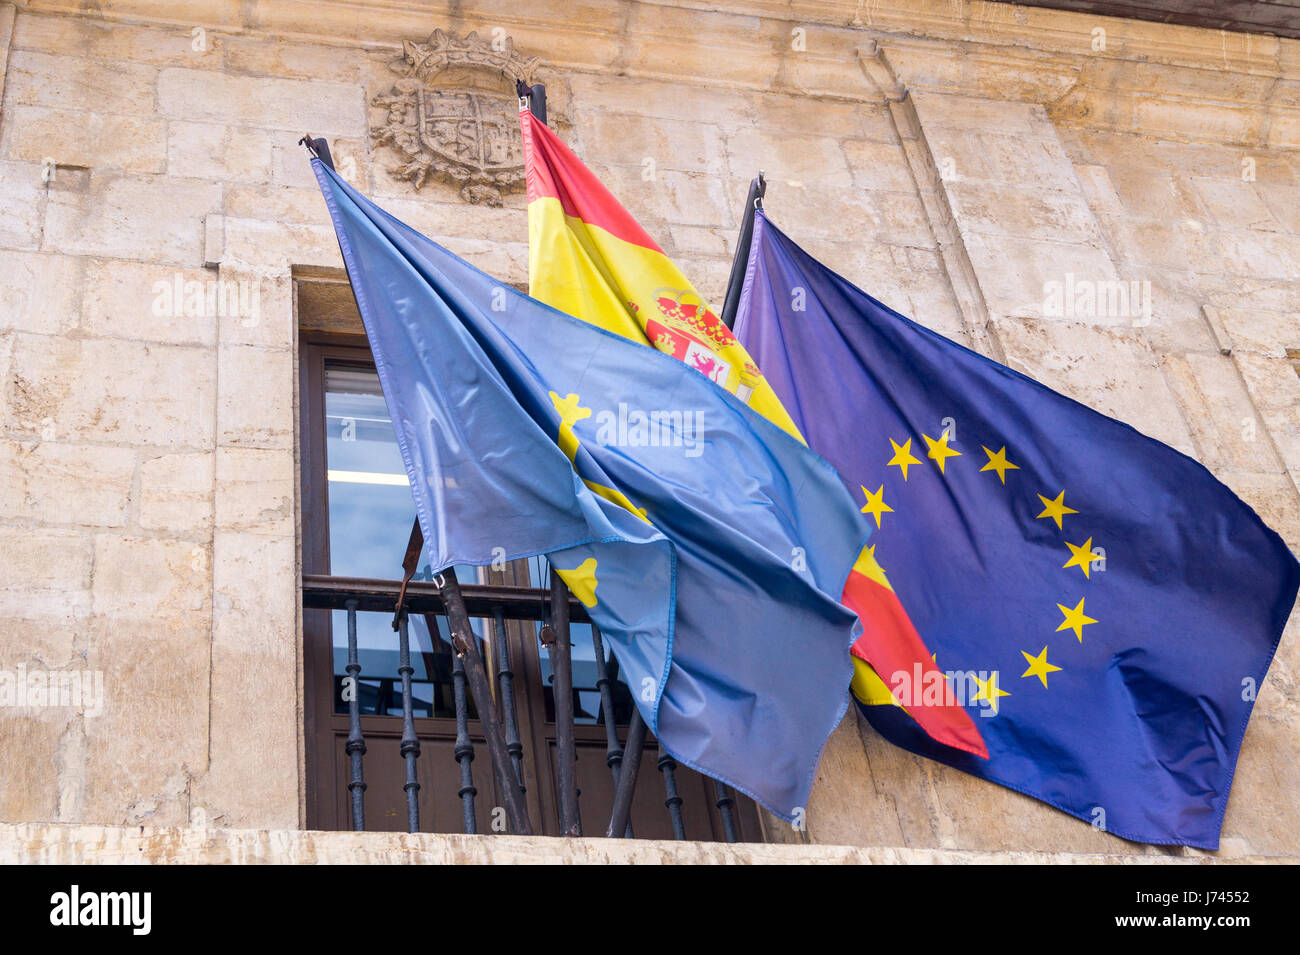 Banderas del Principado de Asturias, Reino de España y la Unión Europea fuera de un edificio gubernamental, Oviedo, Asturias, España Foto de stock